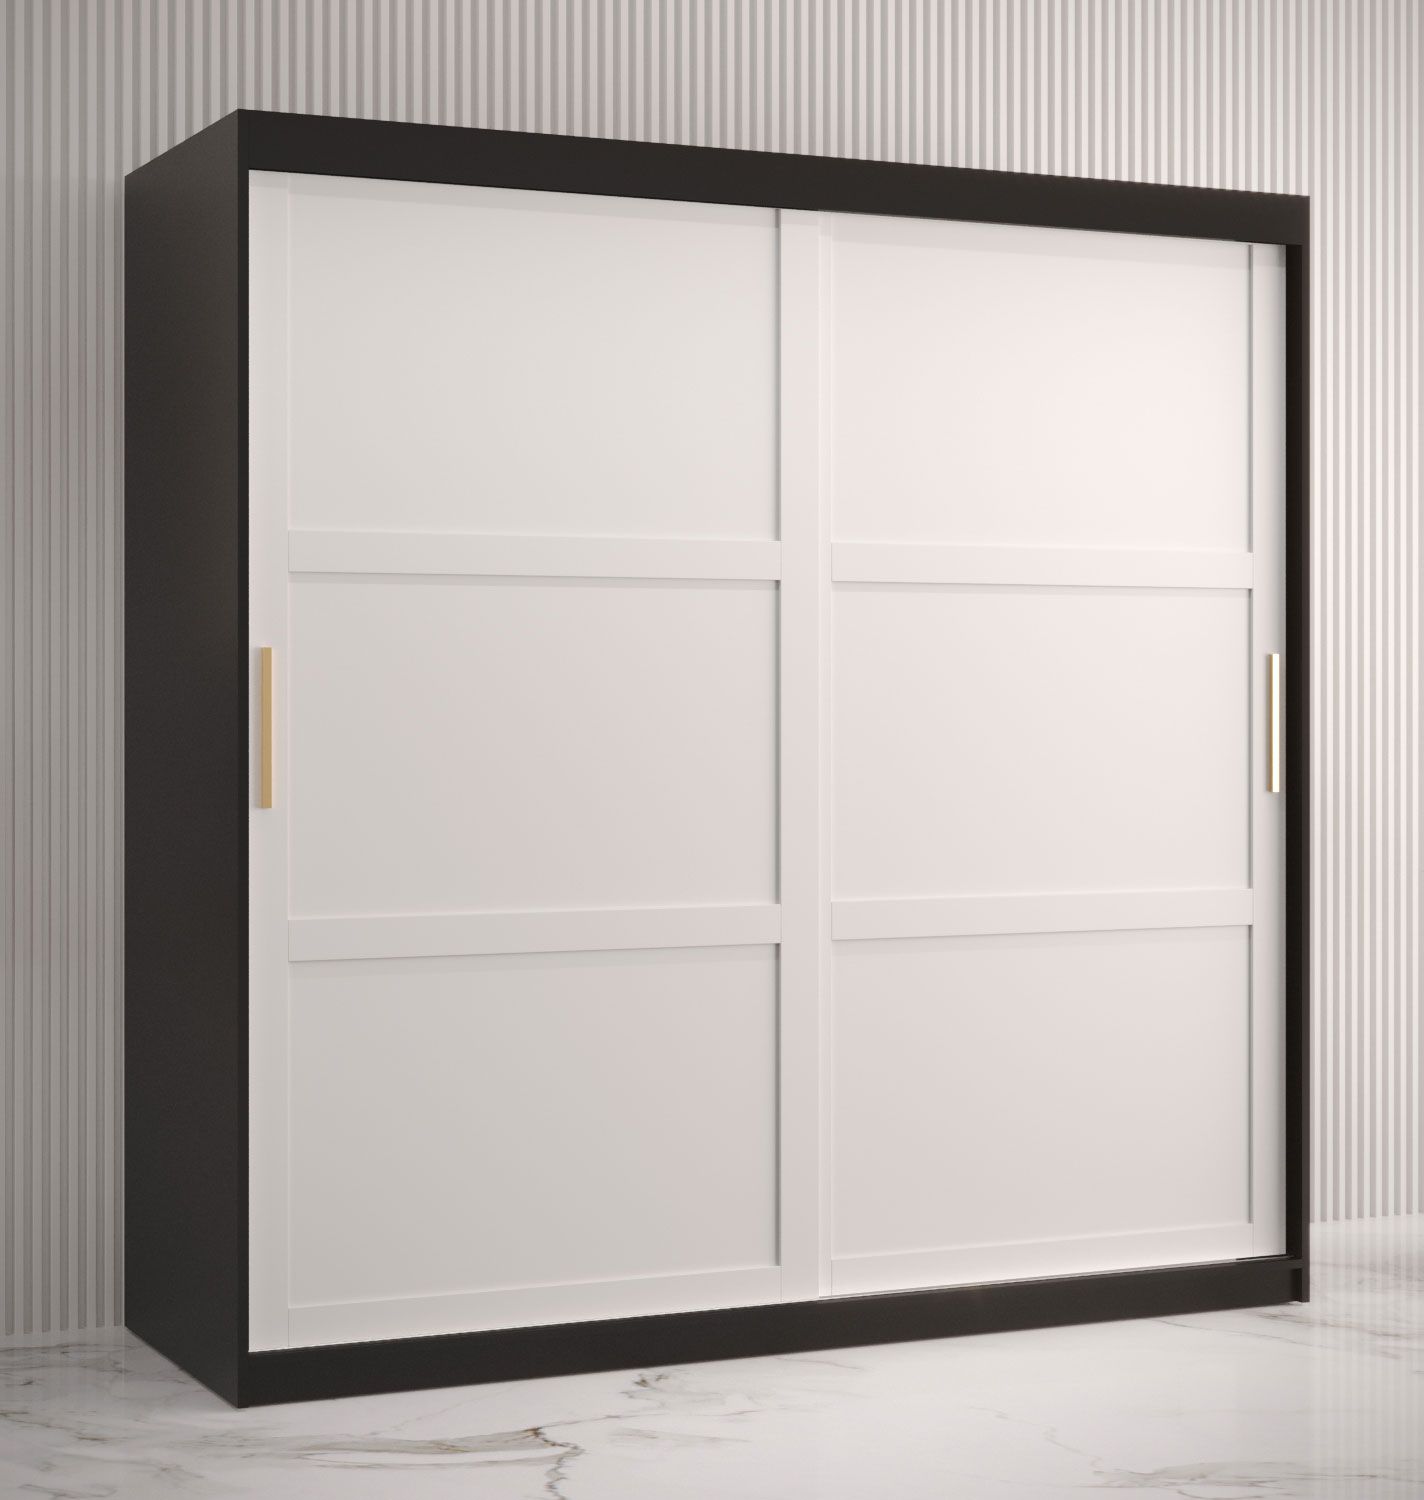 Kleerkast met 10 vakken Liskamm 15, kleur: mat zwart / mat wit - afmetingen: 200 x 180 x 62 cm (H x B x D), met twee deuren